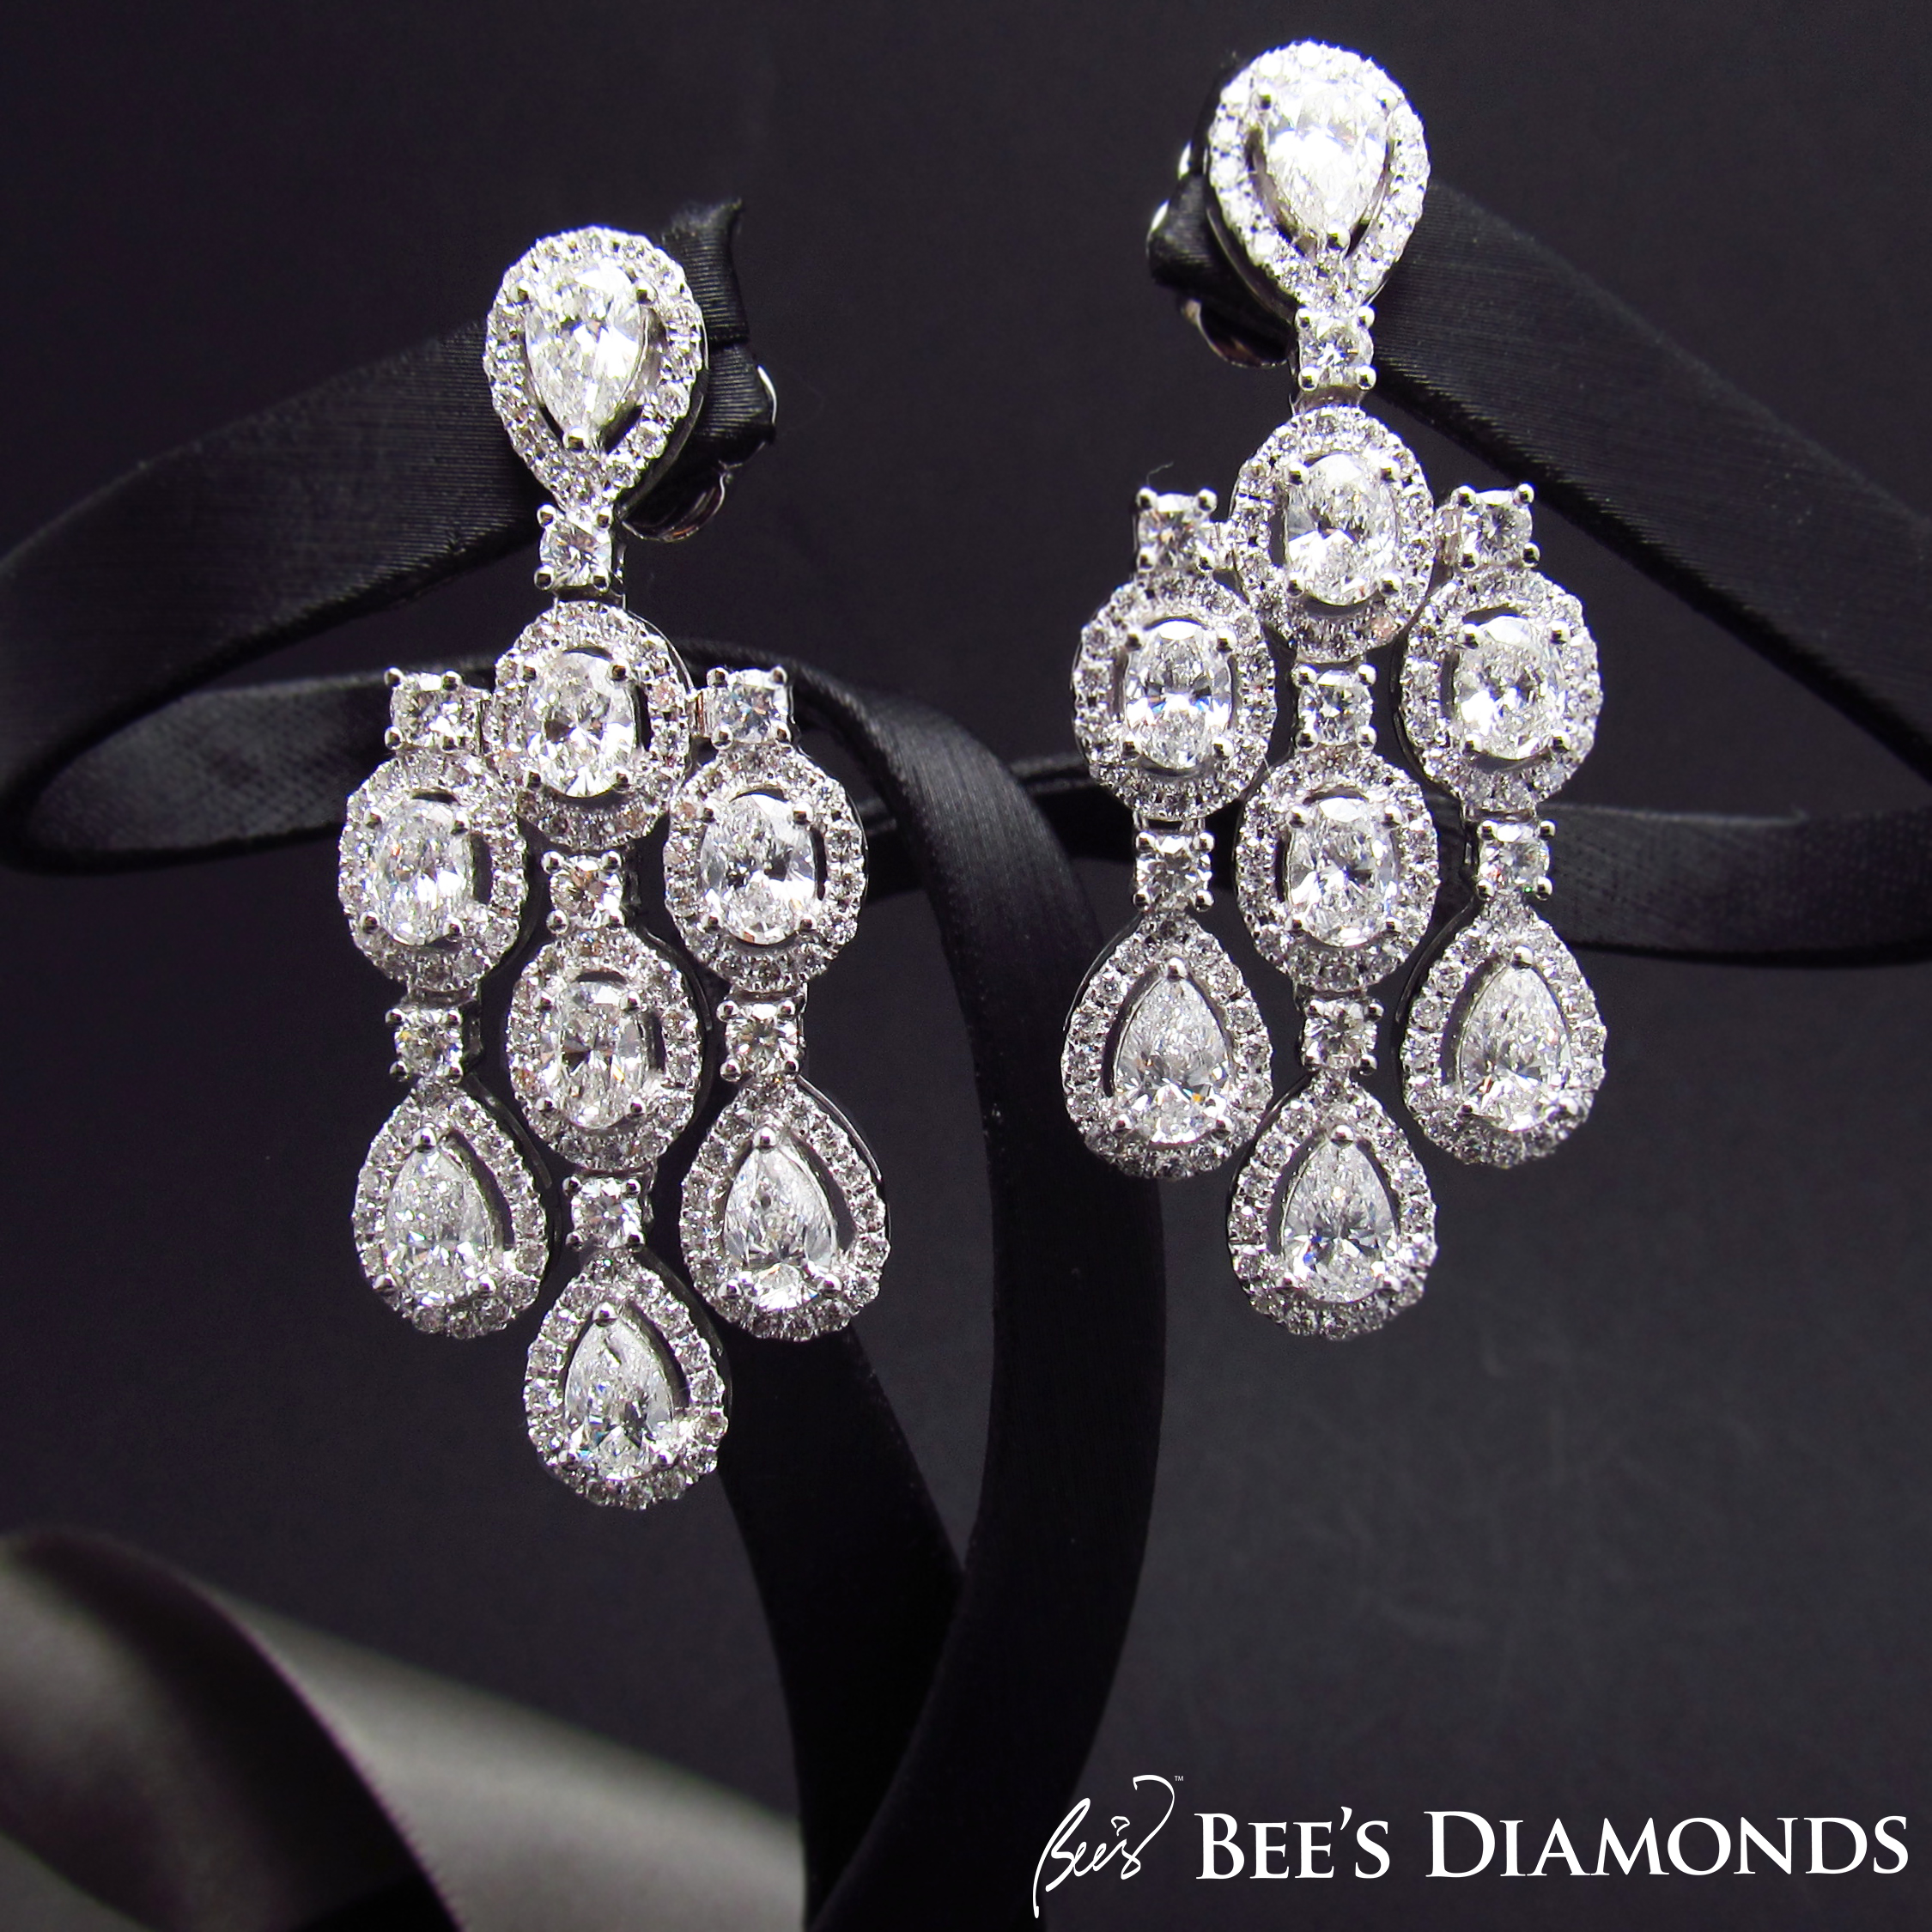 Chandellier style diamond earrings | Bee's Diamonds